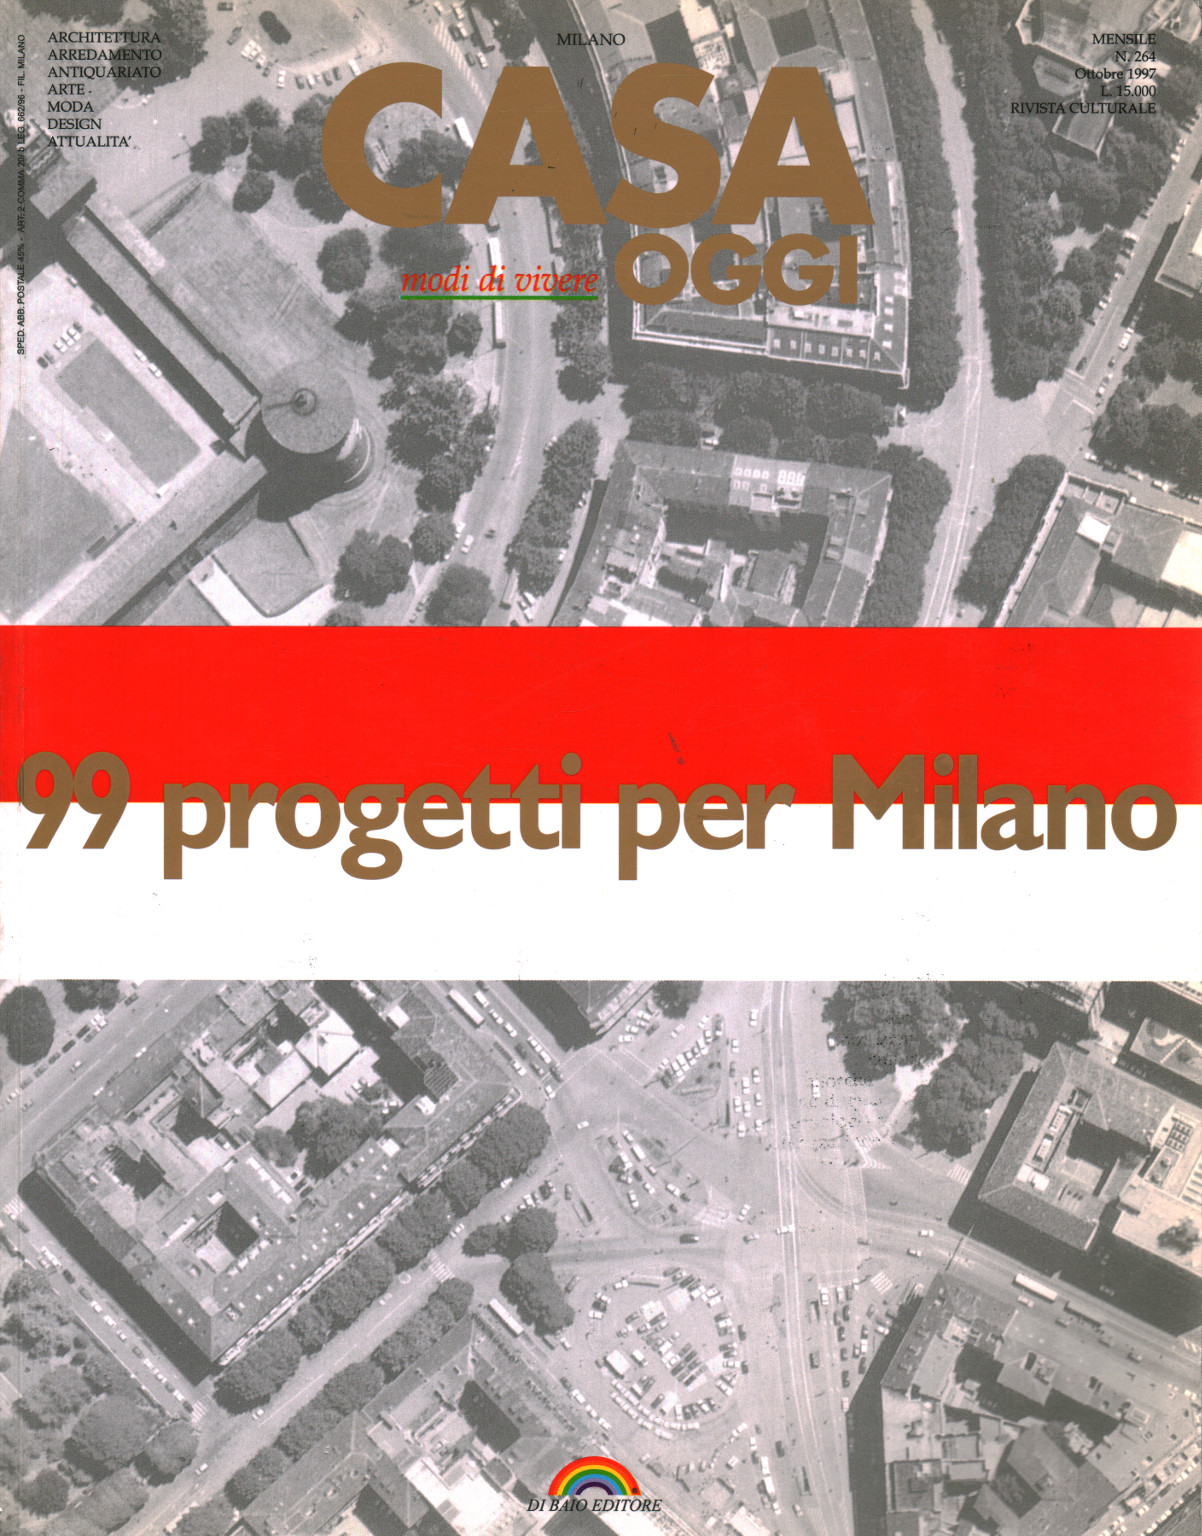 99 projets pour le Milan.un.